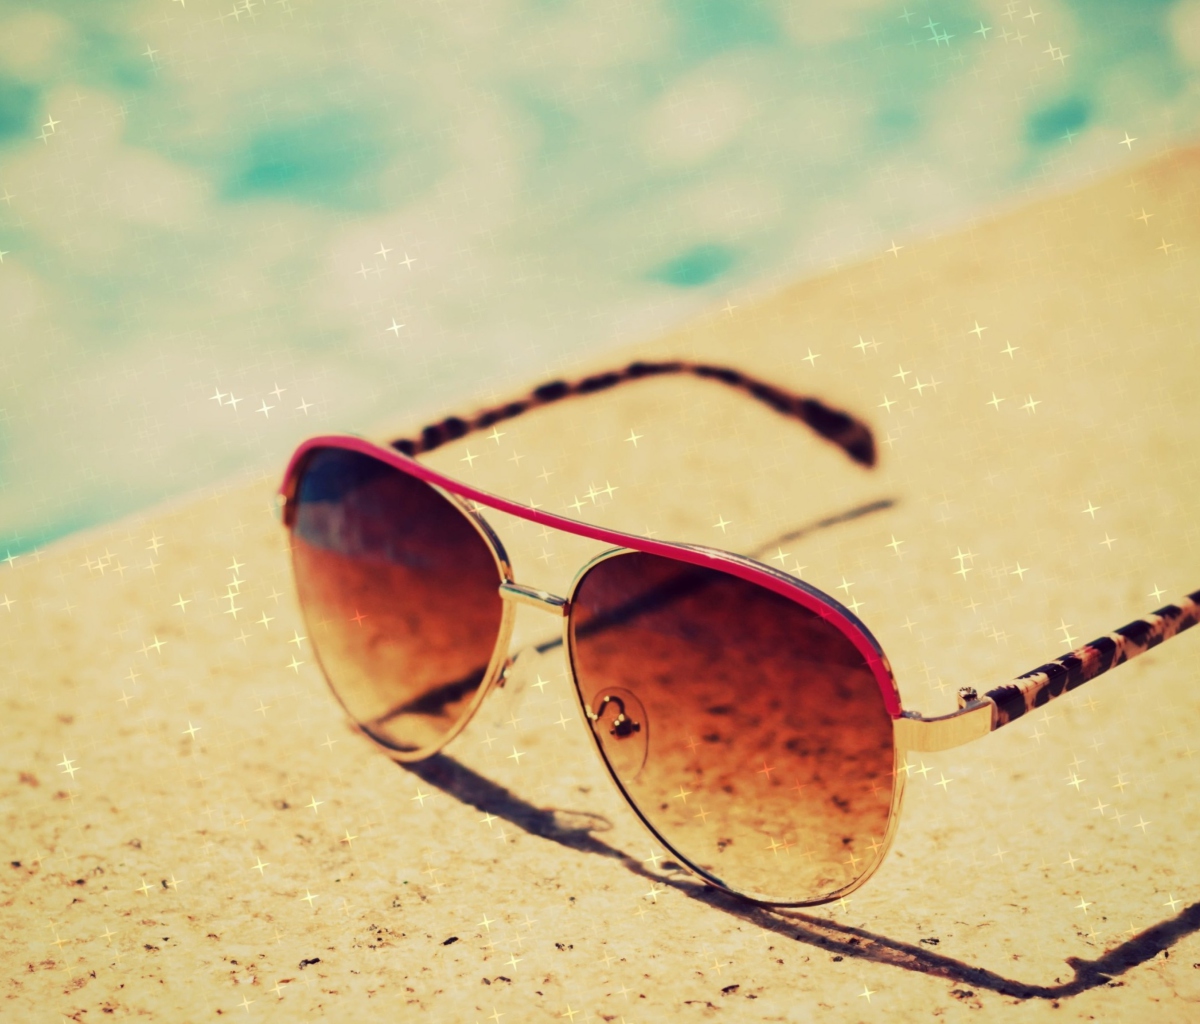 Das Sunglasses By Pool Wallpaper 1200x1024